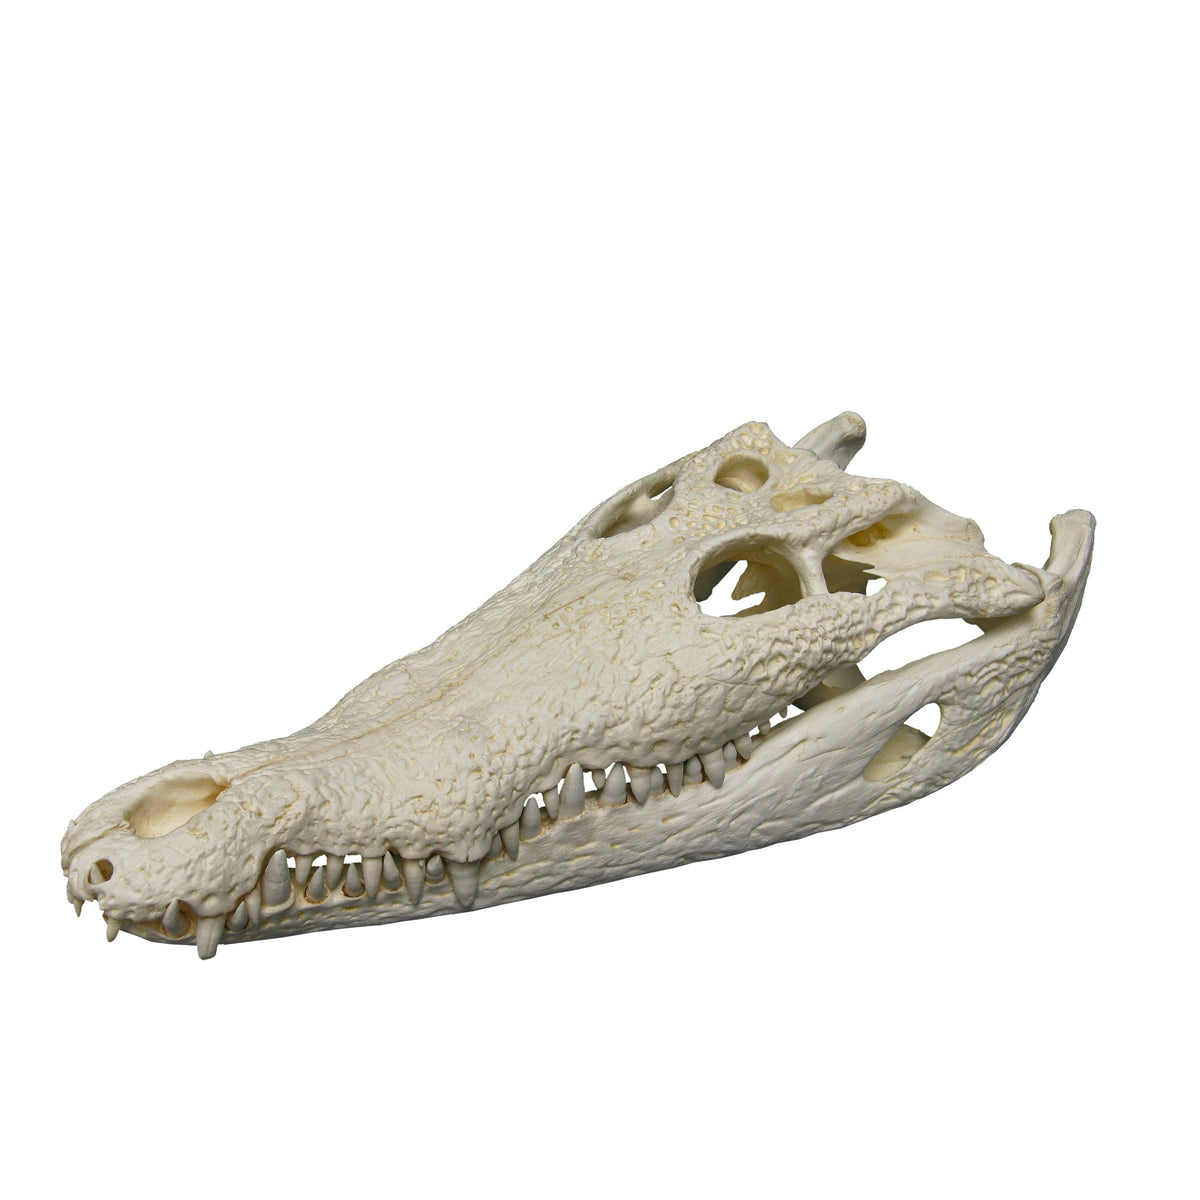 Replica American Crocodile Skull (21inches)